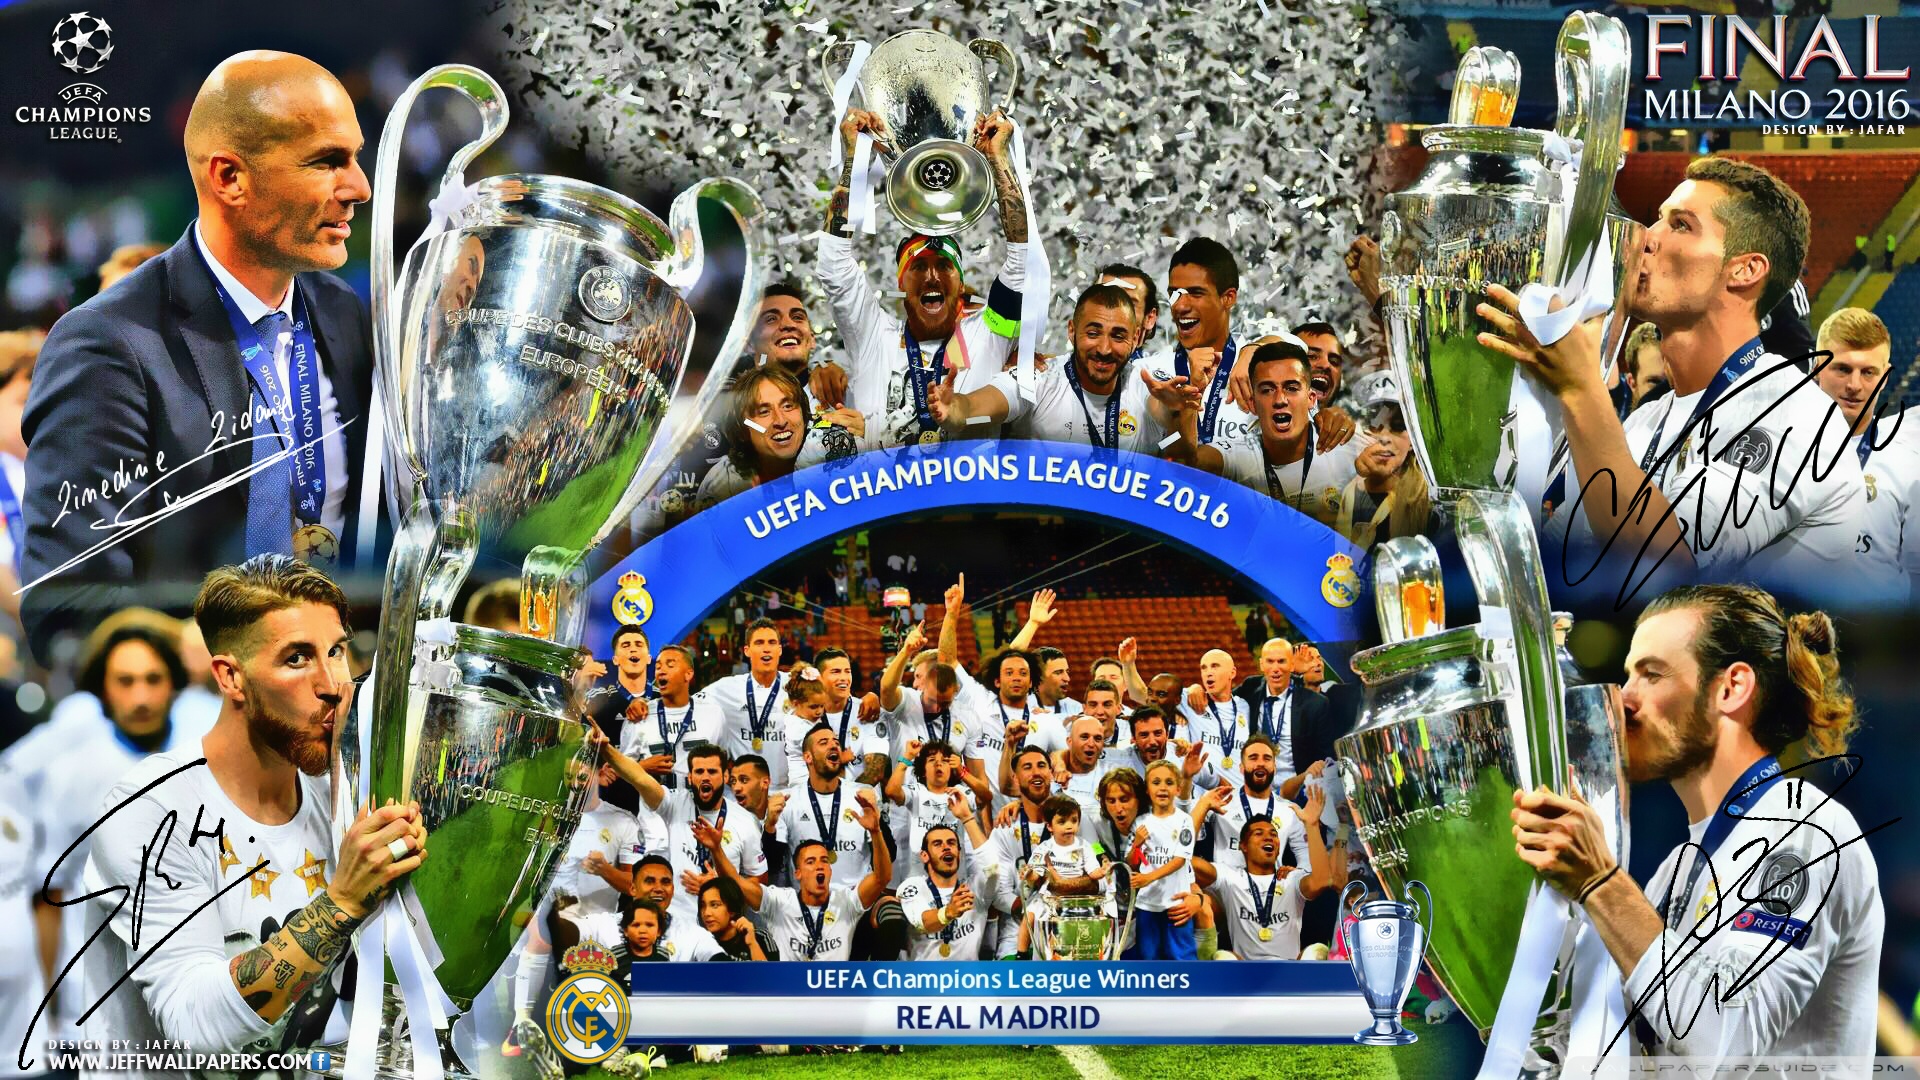 REAL MADRID CHAMPIONS LEAGUE WINNERS 2016 HD Desktop Wallpaper